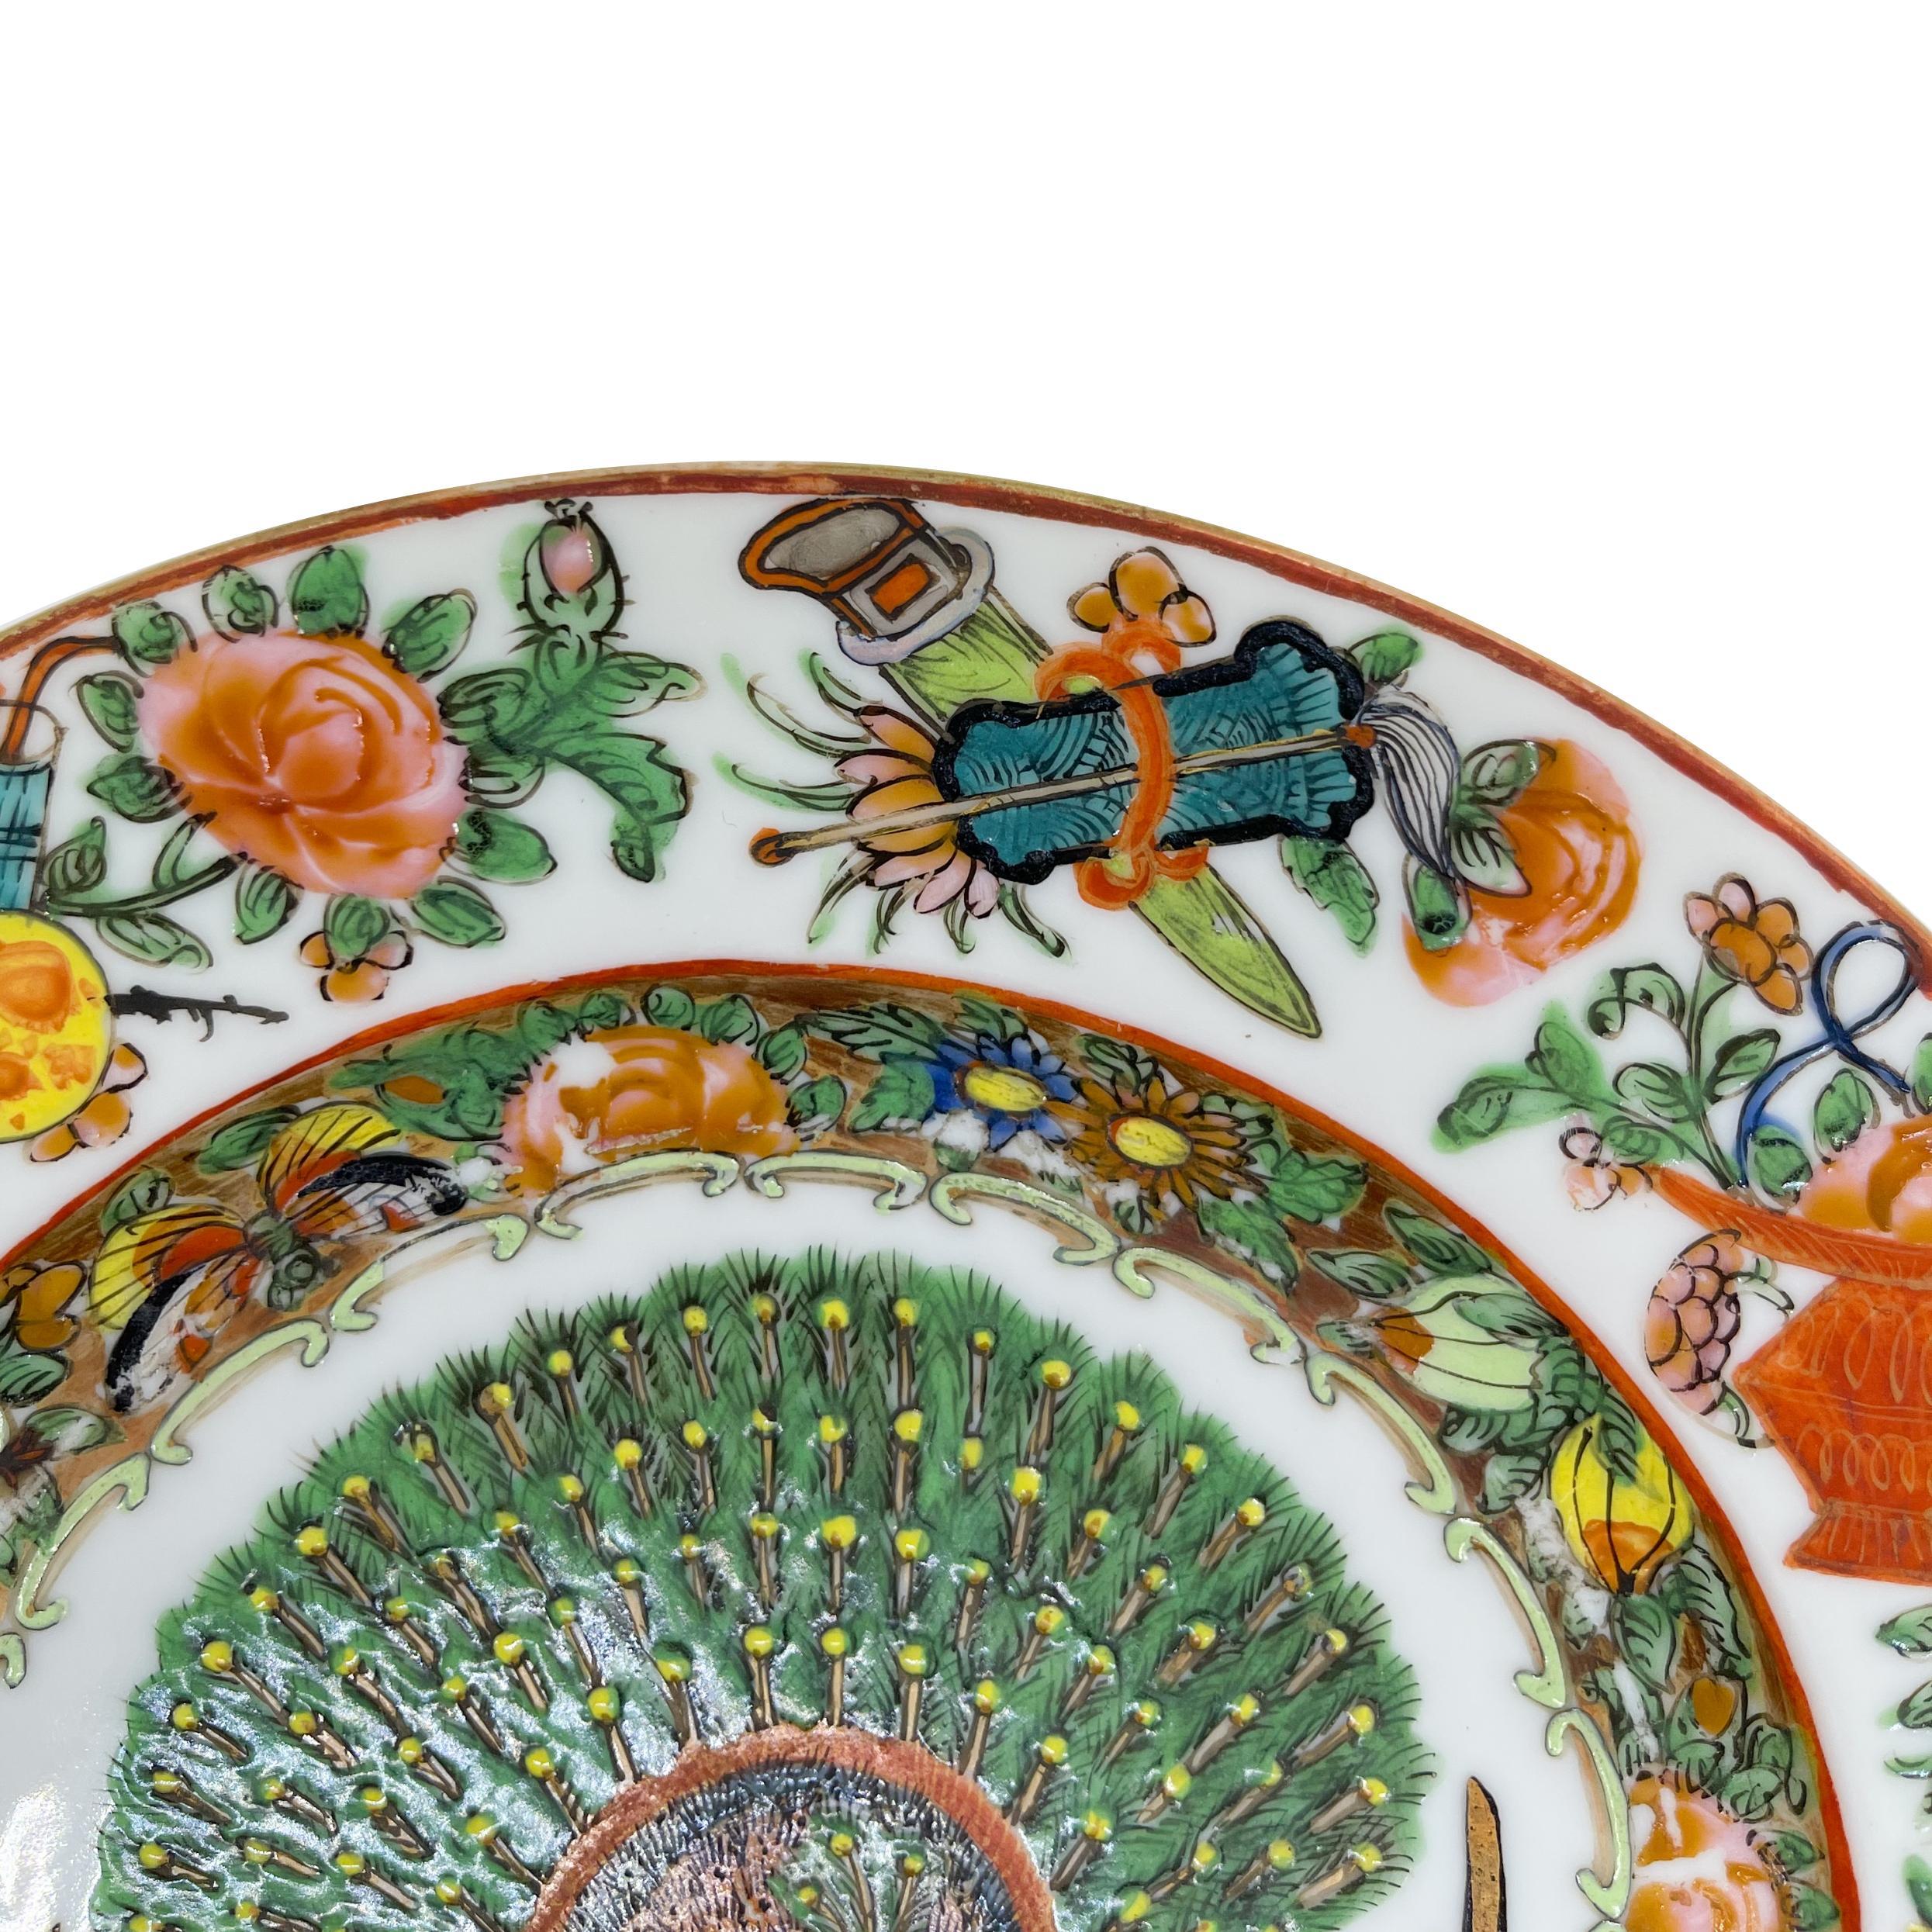 Assiette rose de la famille de Canton, dynastie Qing, époque Tongzhi, vers 1865. 
Le rondeau central est orné d'un paon en émail polychrome, la bordure intérieure du cavet est ornée d'un motif floral et fruitier avec deux papillons sur fond doré,